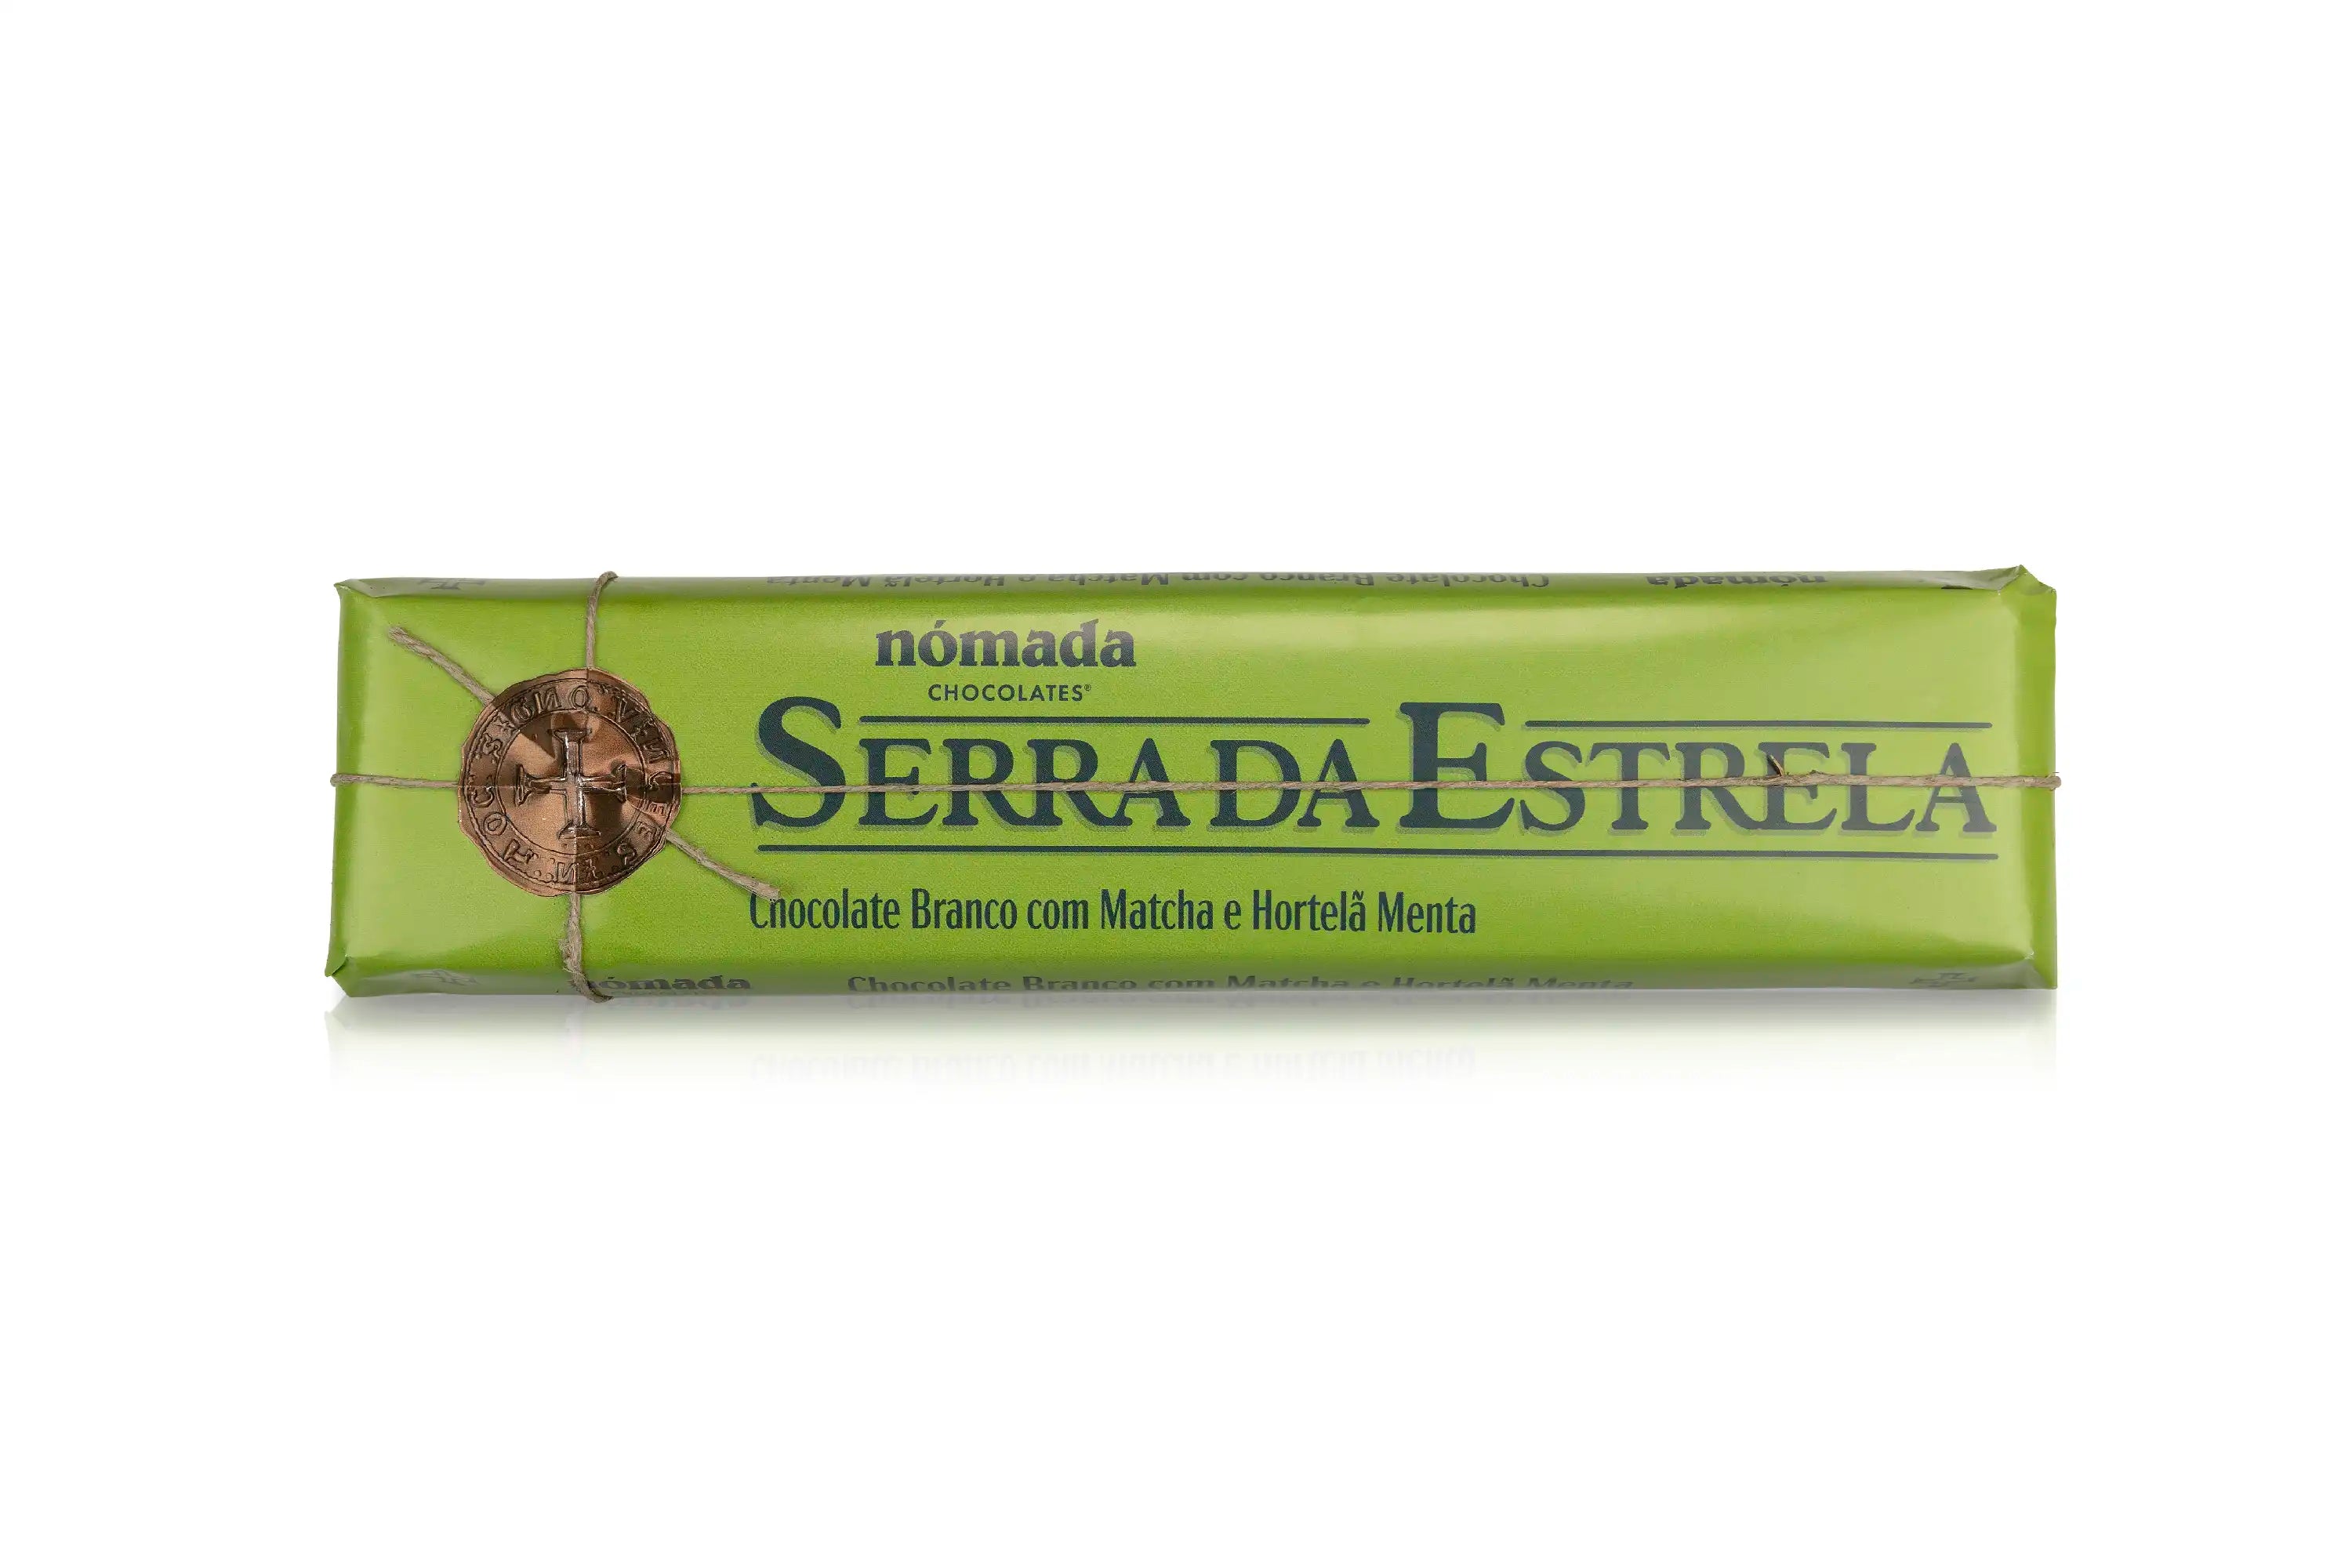 Tablete de Chocolate Branco com Matcha e Hortelã Nómada 300g